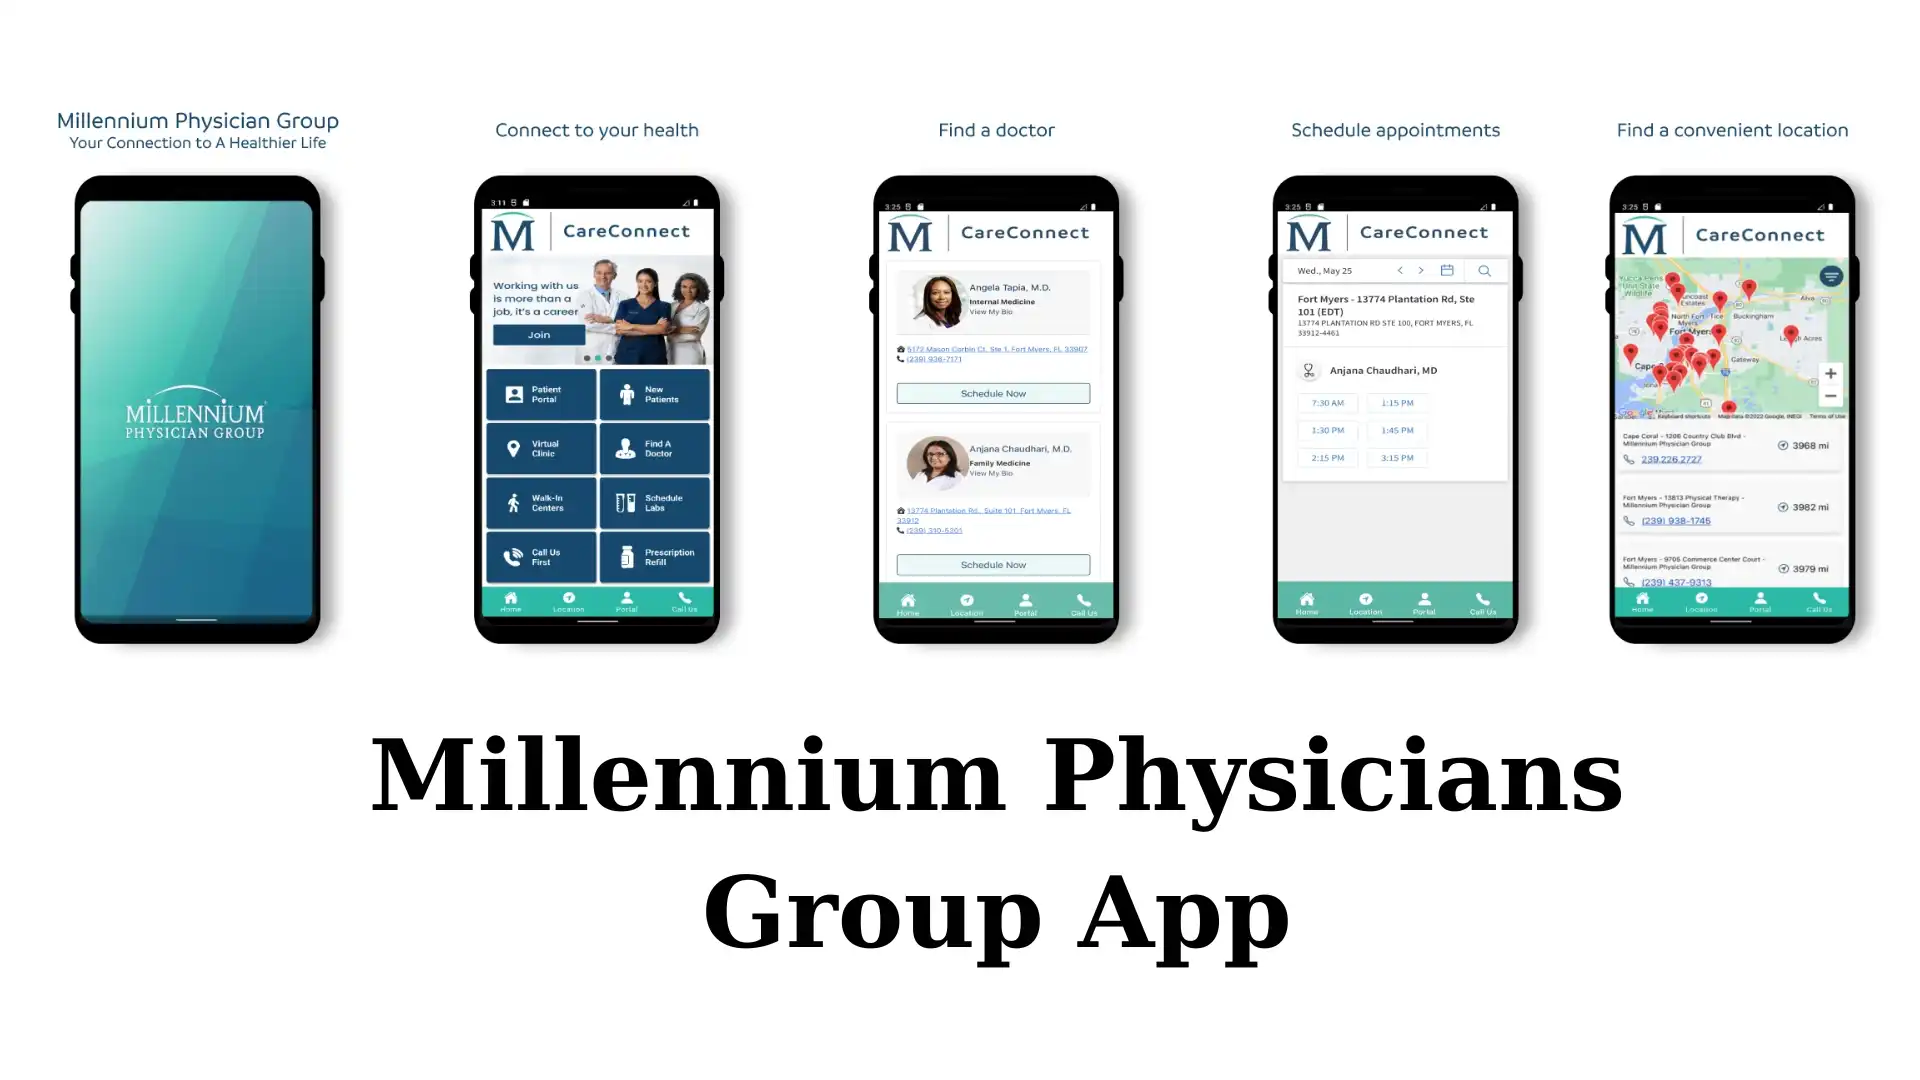 Millennium Physicians Group App